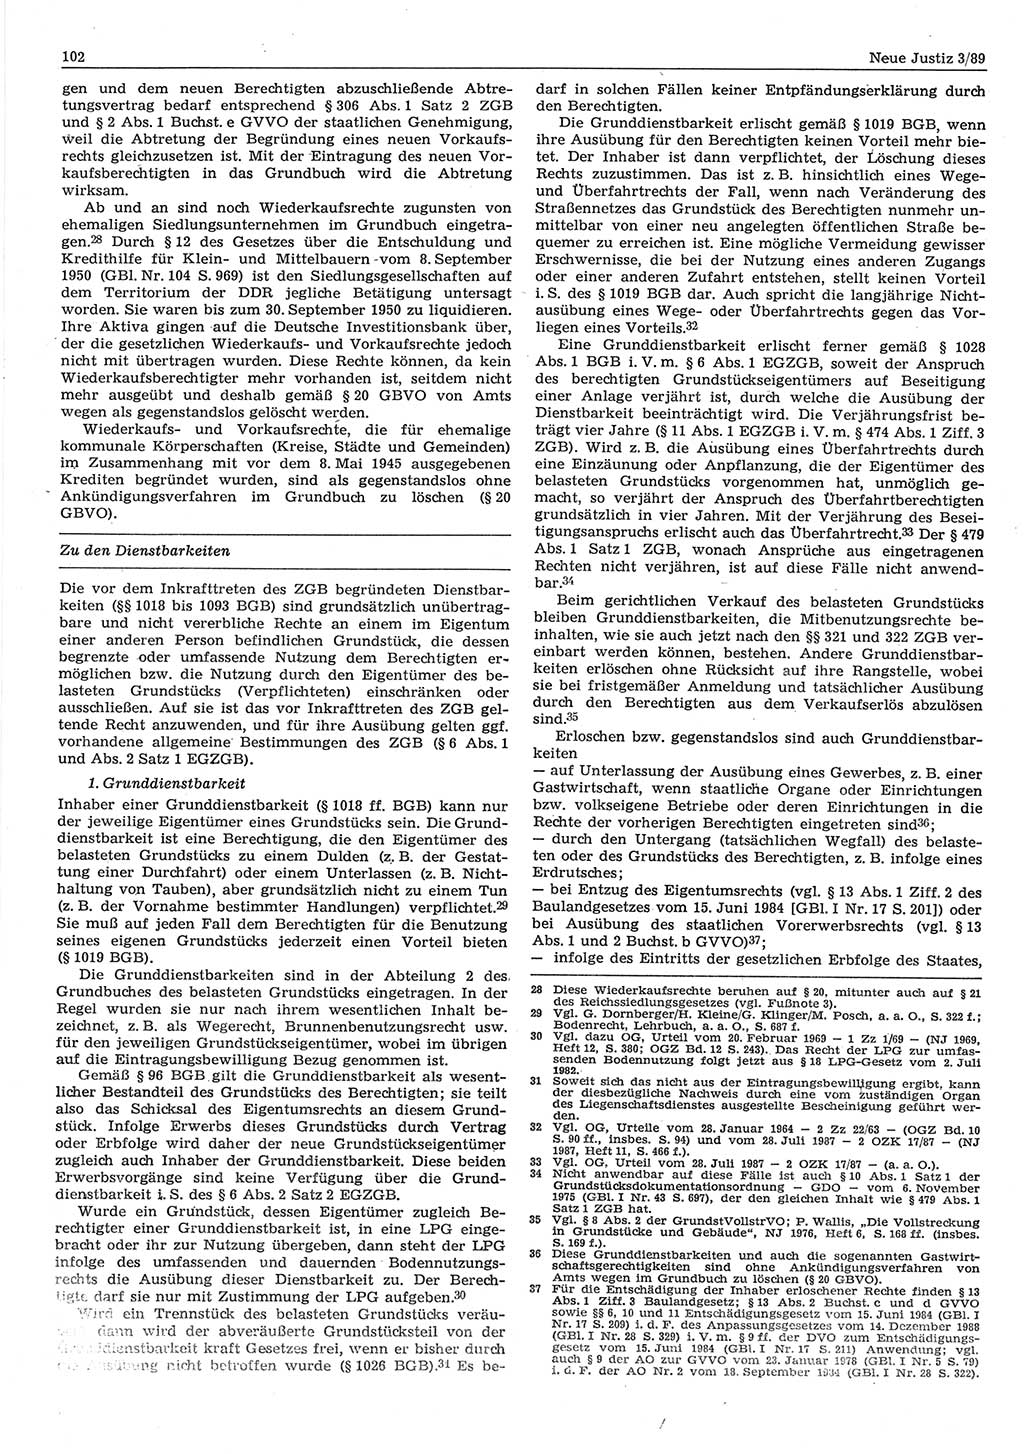 Neue Justiz (NJ), Zeitschrift für sozialistisches Recht und Gesetzlichkeit [Deutsche Demokratische Republik (DDR)], 43. Jahrgang 1989, Seite 102 (NJ DDR 1989, S. 102)